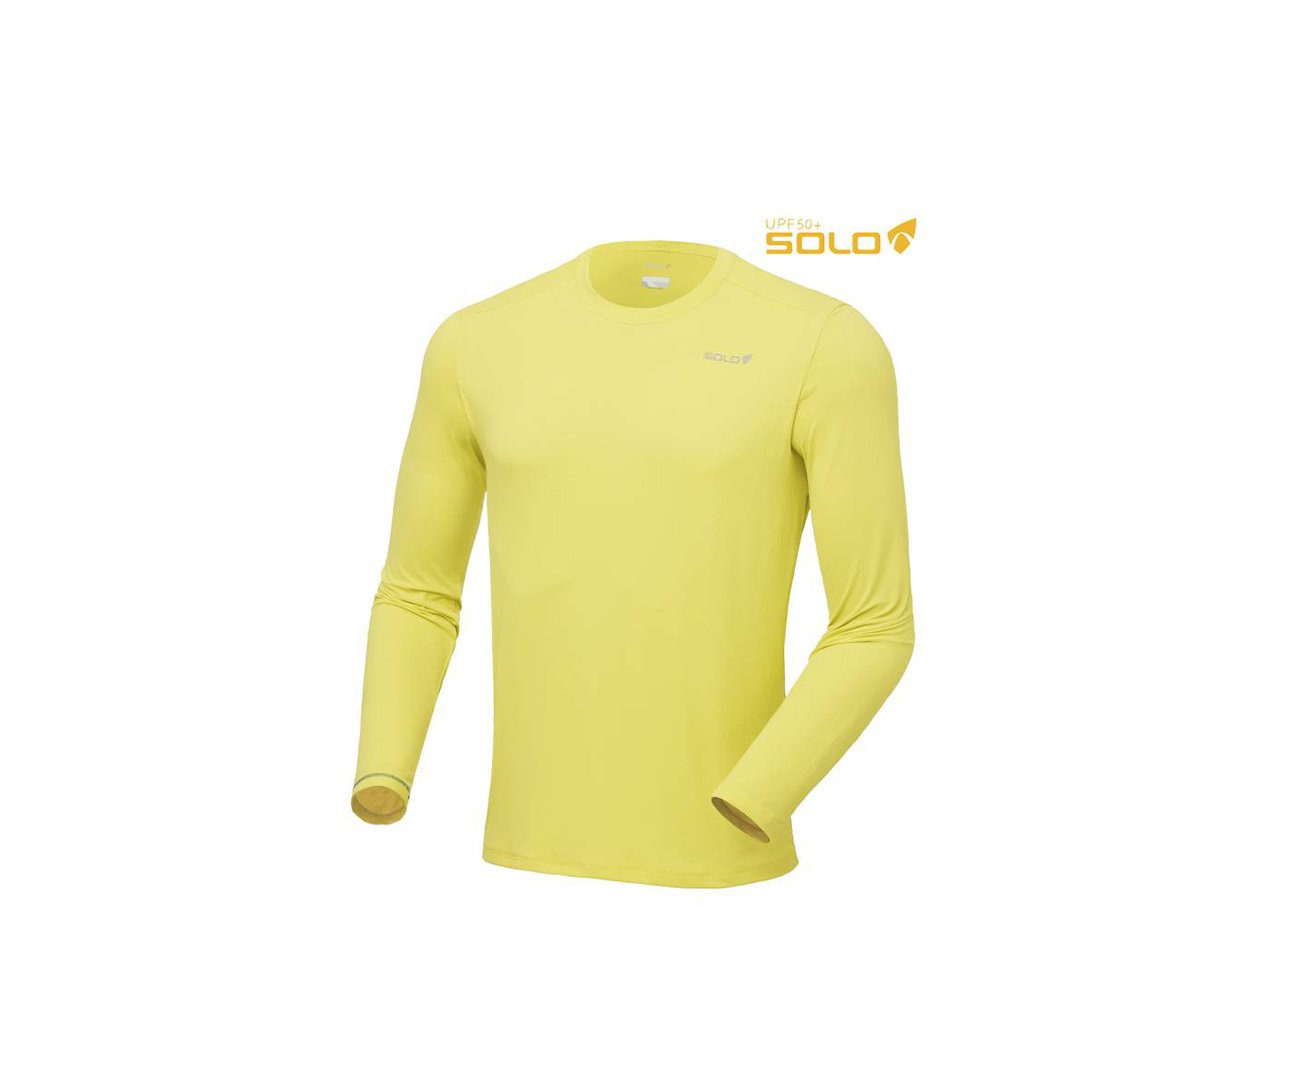 Camiseta Softline Verde Aquamarine - Proteção Uva/uvb 50+ Fps - Cardume